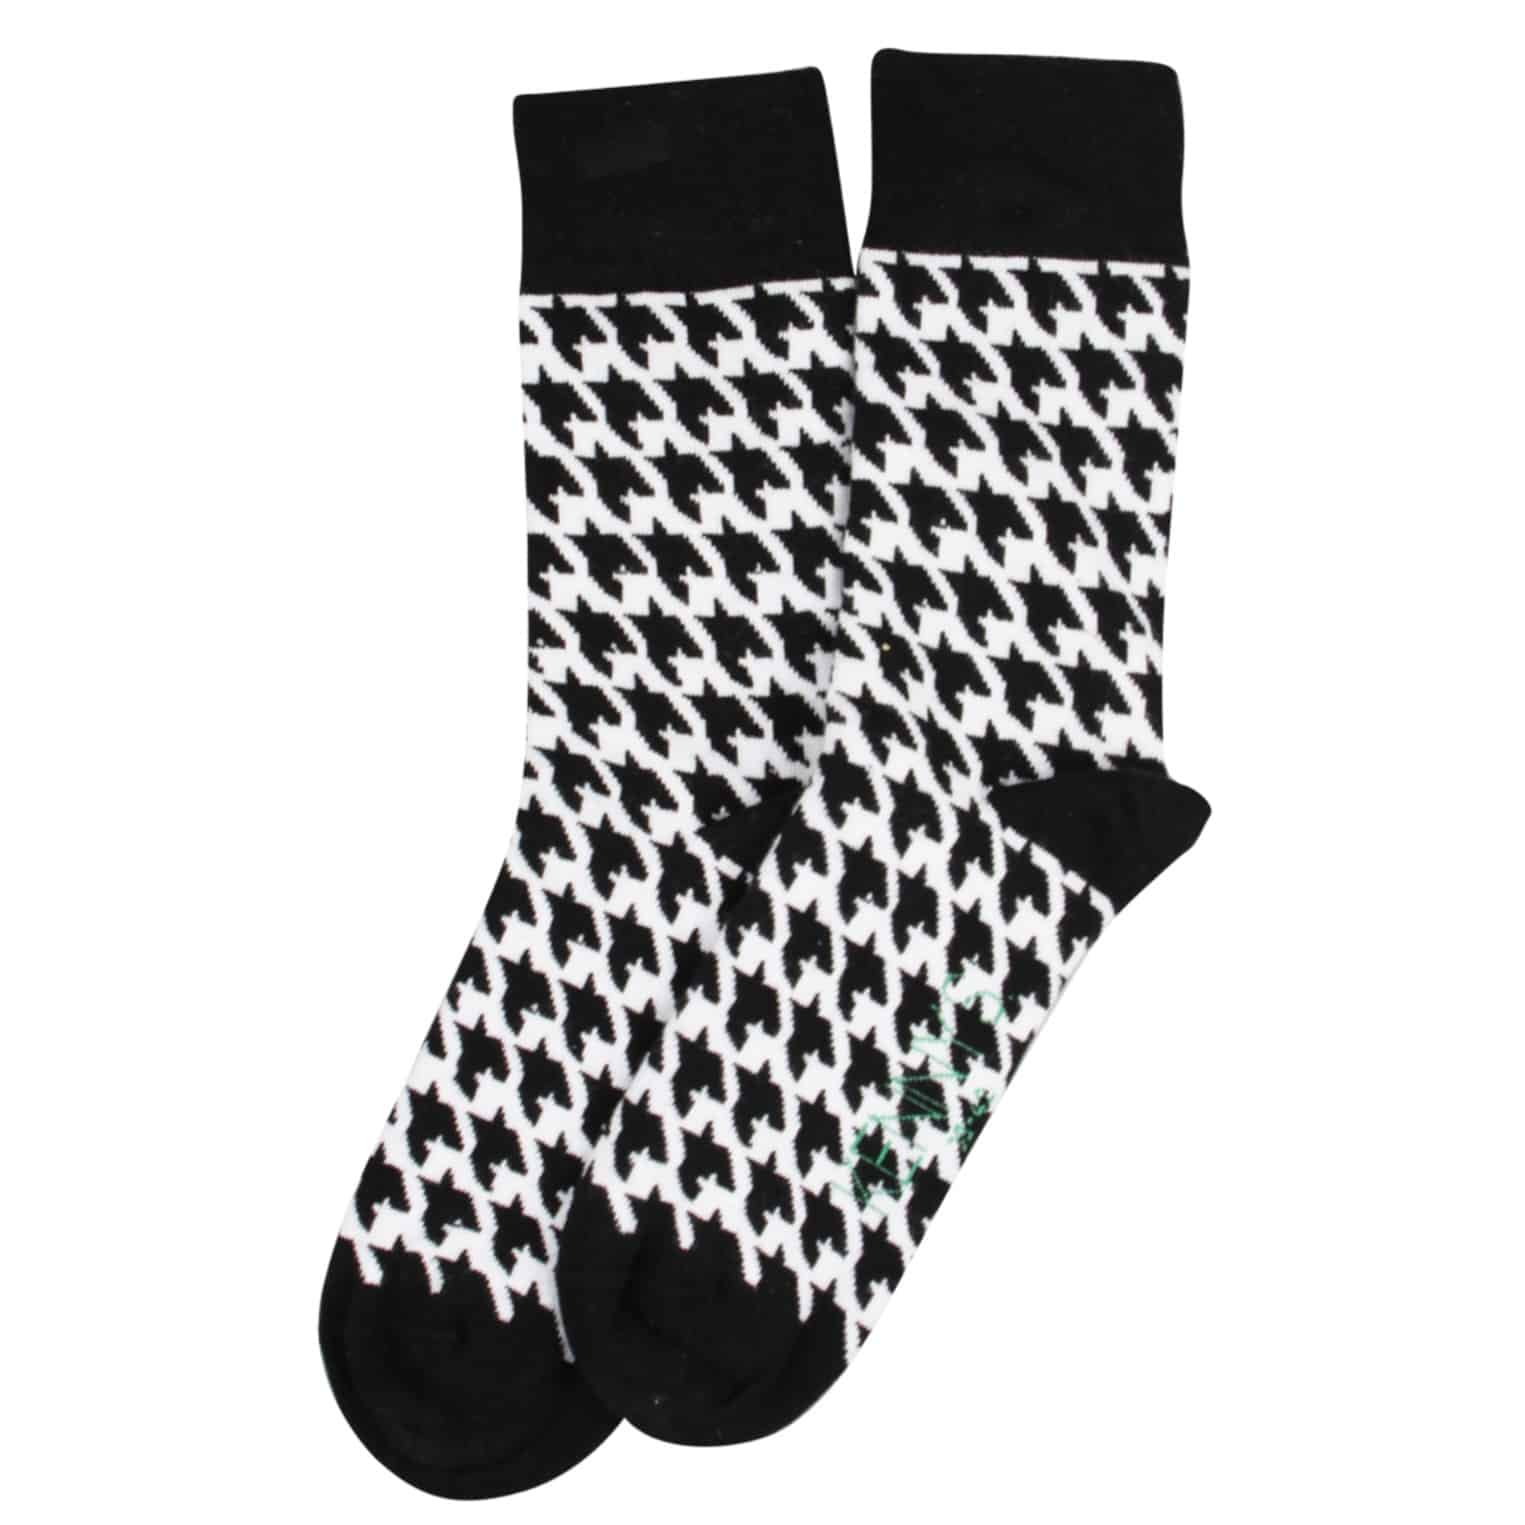 Socken mit Hahnentritt Muster von Kenny S Art. 140041 in schwarz weiß bei Mode Sabine Lemke in Winnenden und im Onlineshop